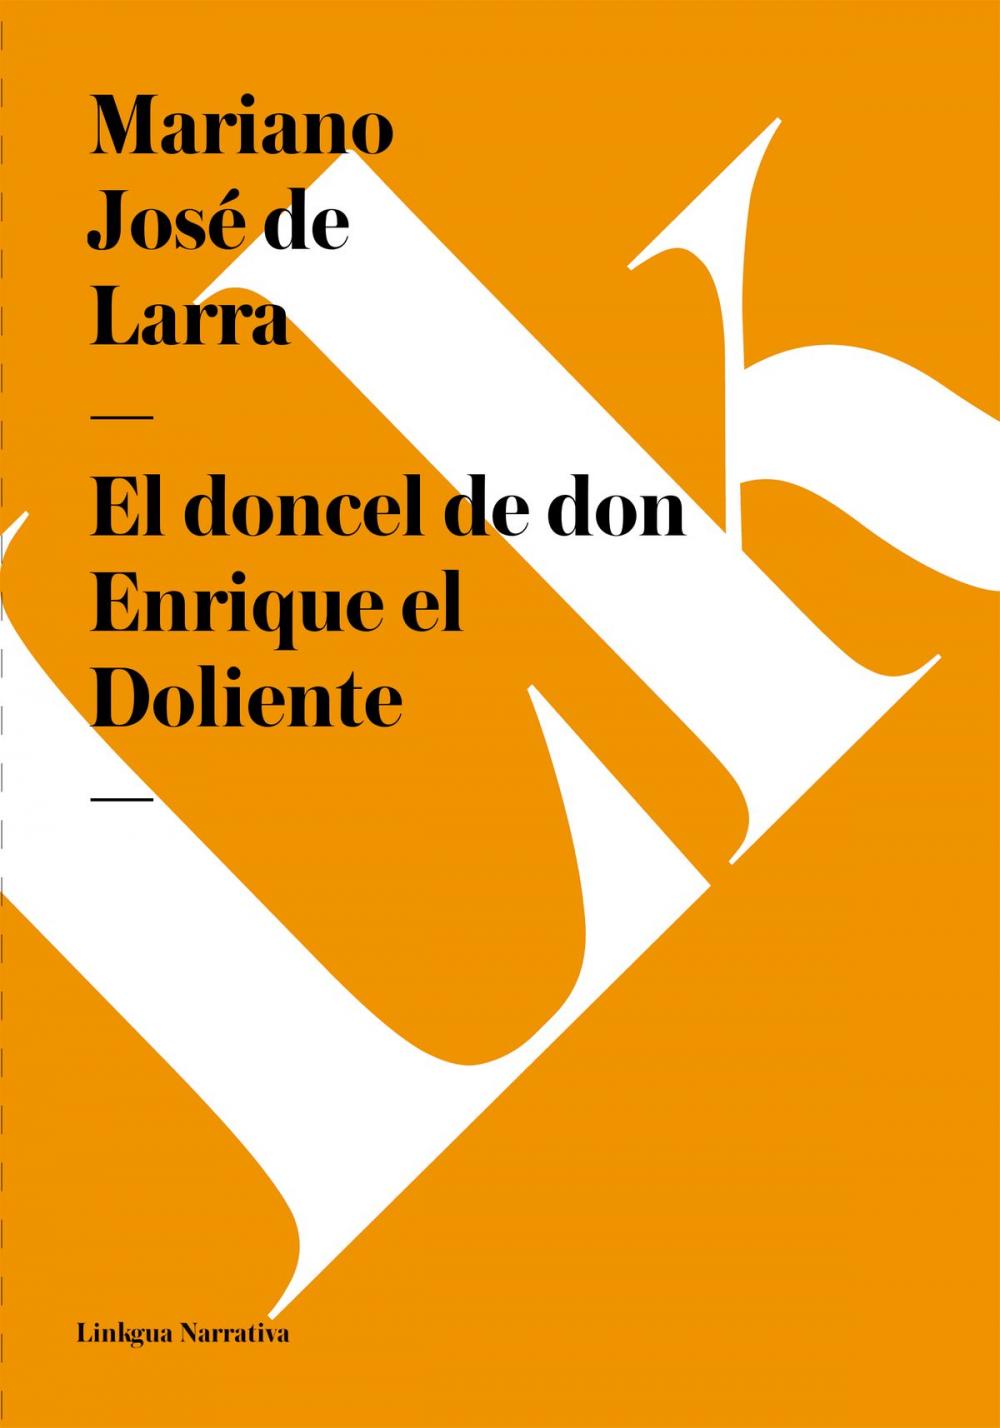 Big bigCover of doncel de don Enrique el Doliente